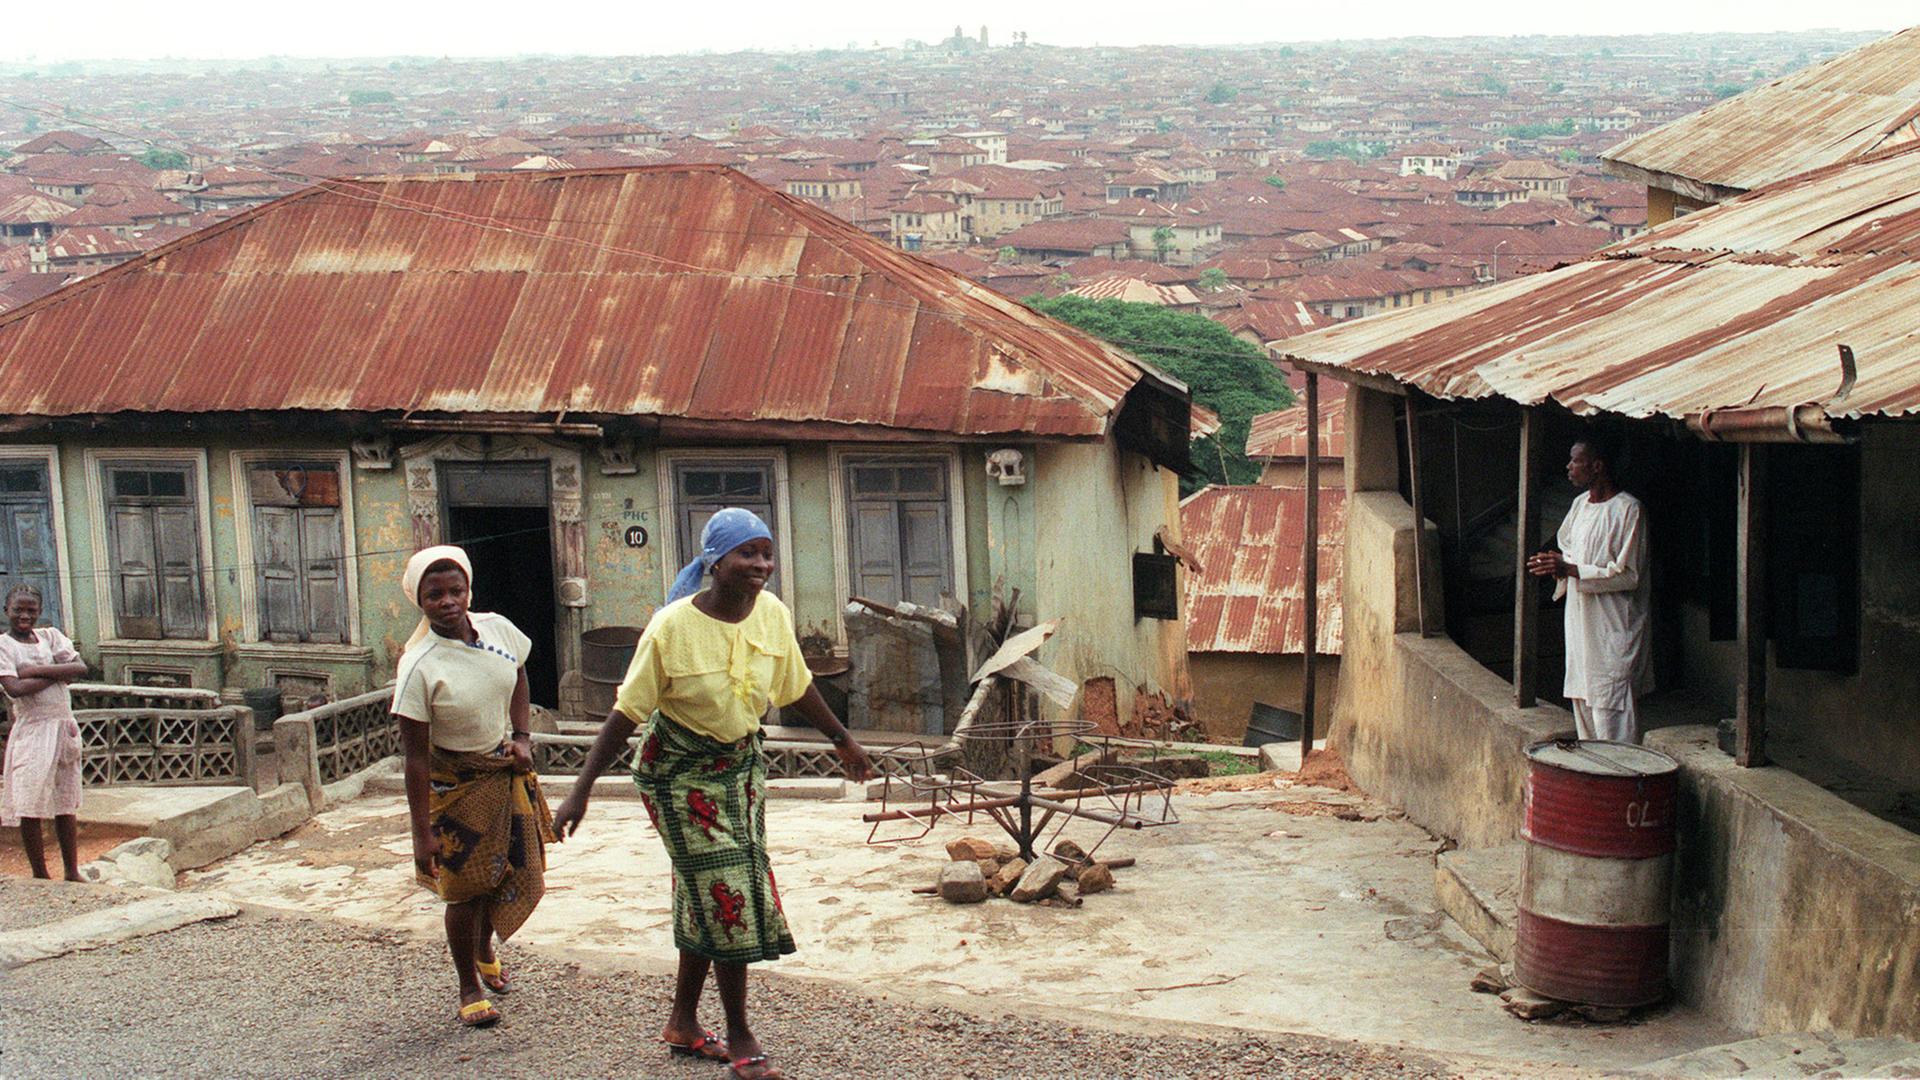 NIgeria: Blick auf Ibadan, das eine der größten Städte des Landes ist. Es liegt nordöstlich von der Hauptstadt Lagos.